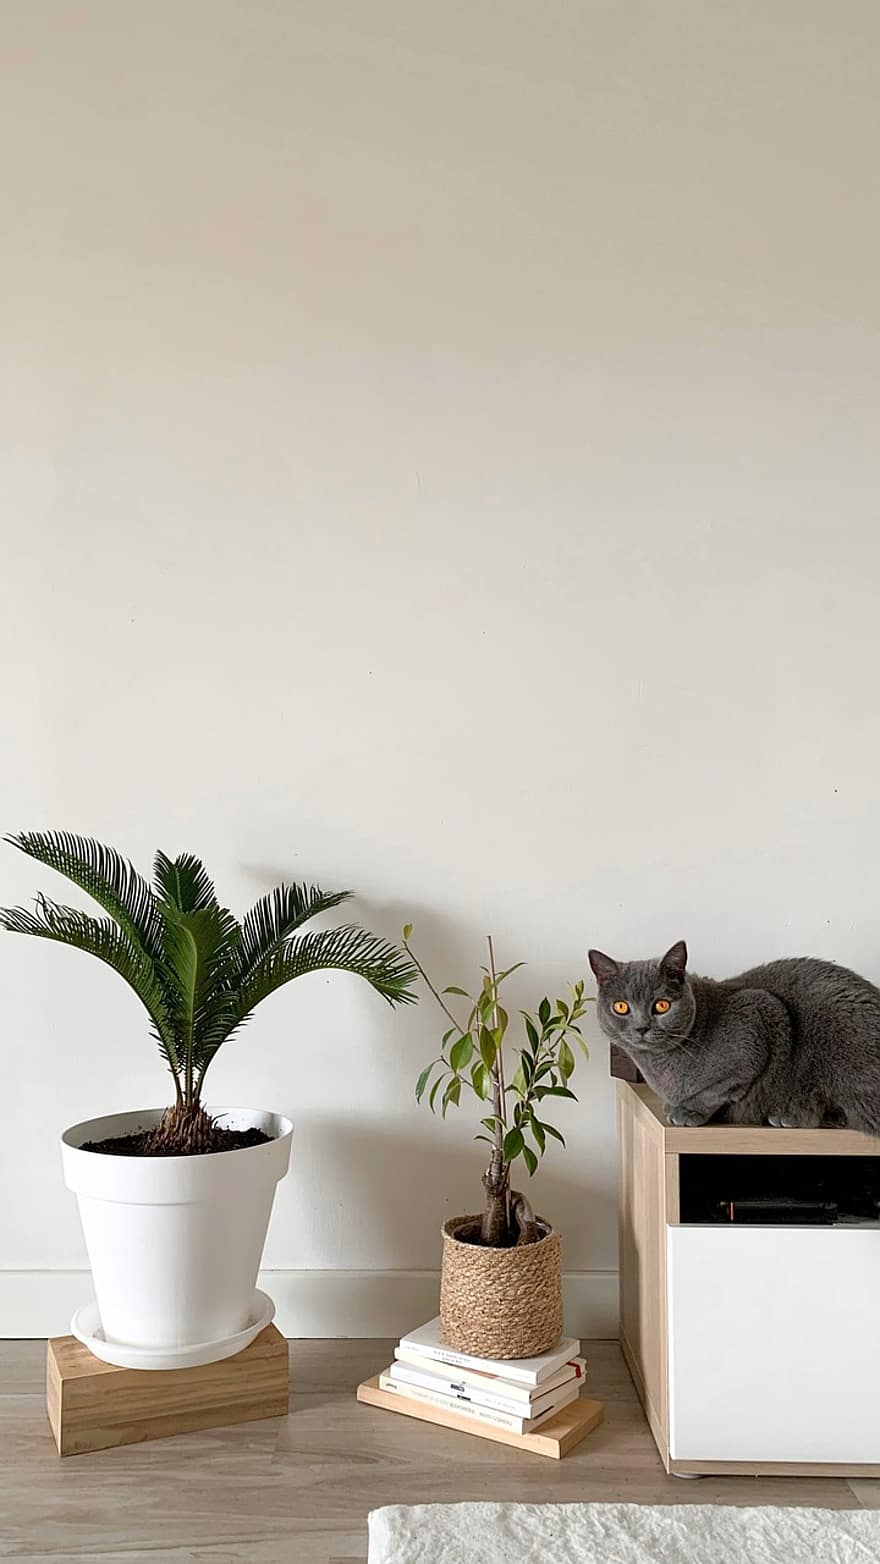 kočka, Kočkovitý, domácí zvíře, rostlina, Domov, design, interiér, byt, dekorace, zvíře, Příroda